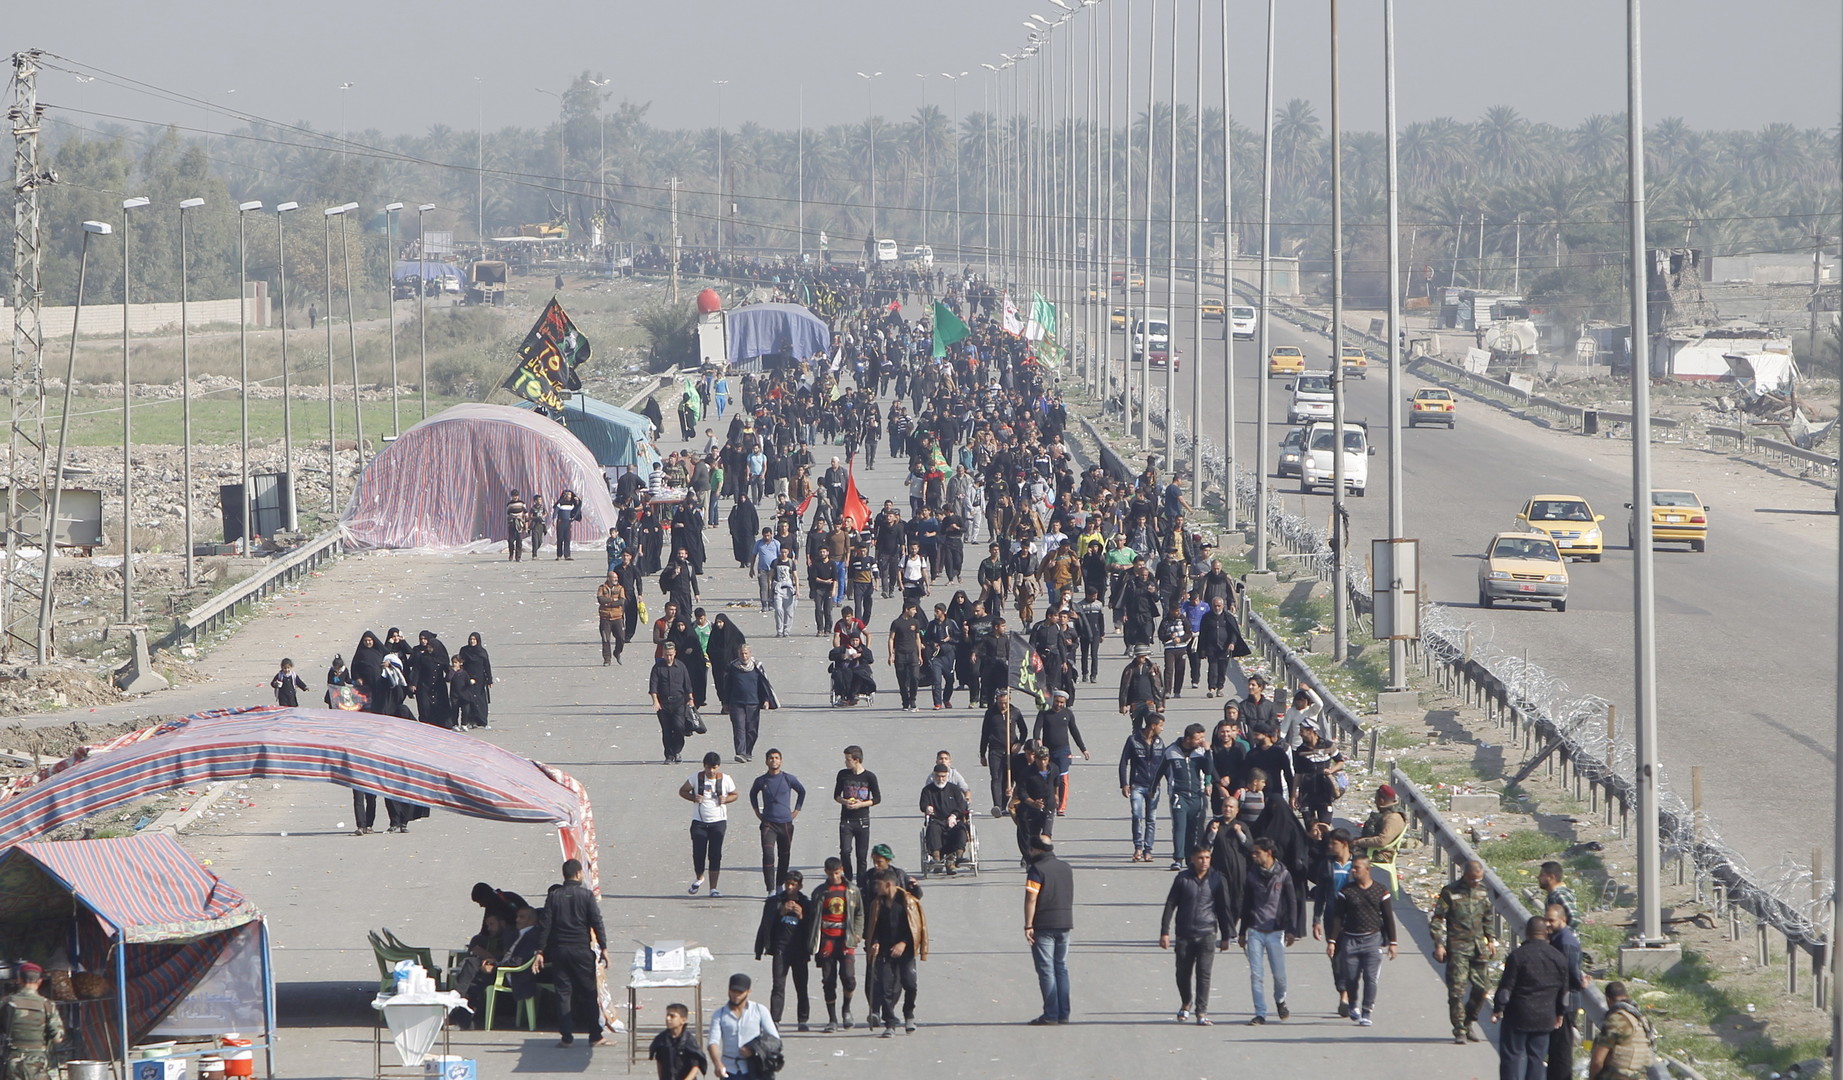 Tensions à la frontière entre l'Iran et l'Irak sur fond de pèlerinage des chiites (PHOTOS)